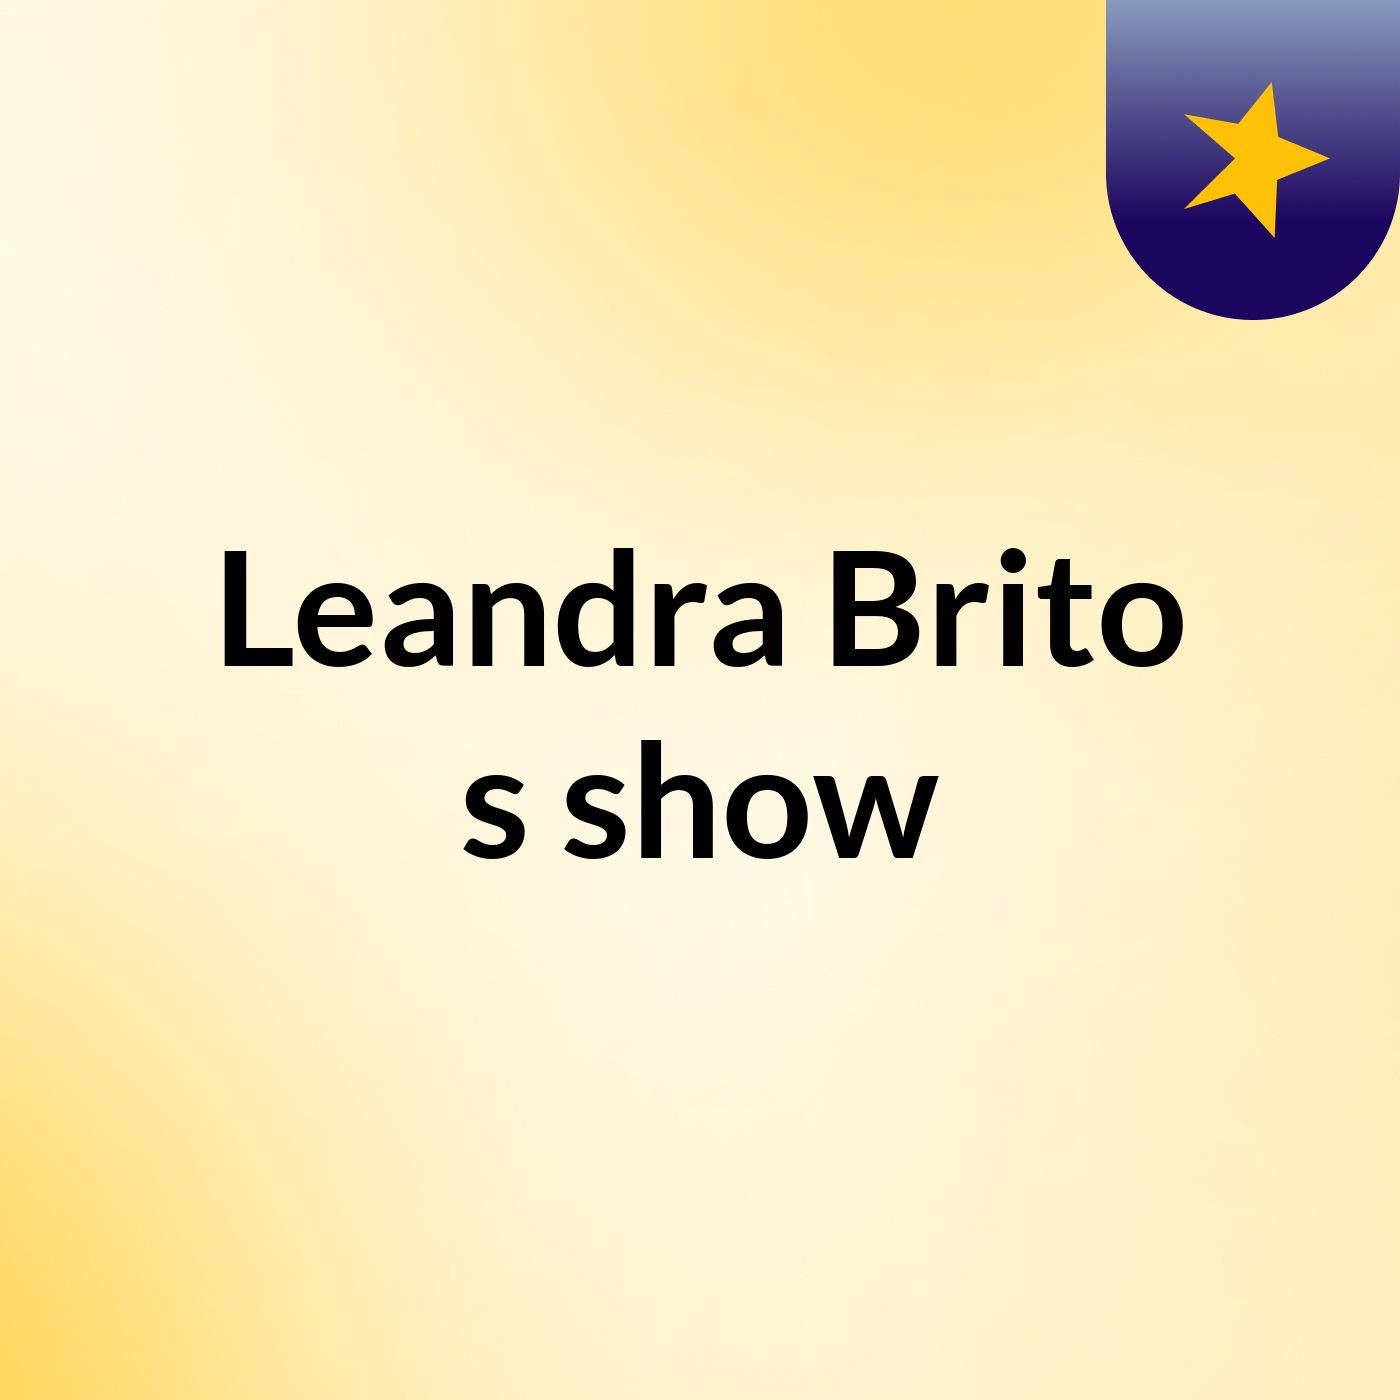 Leandra Brito's show